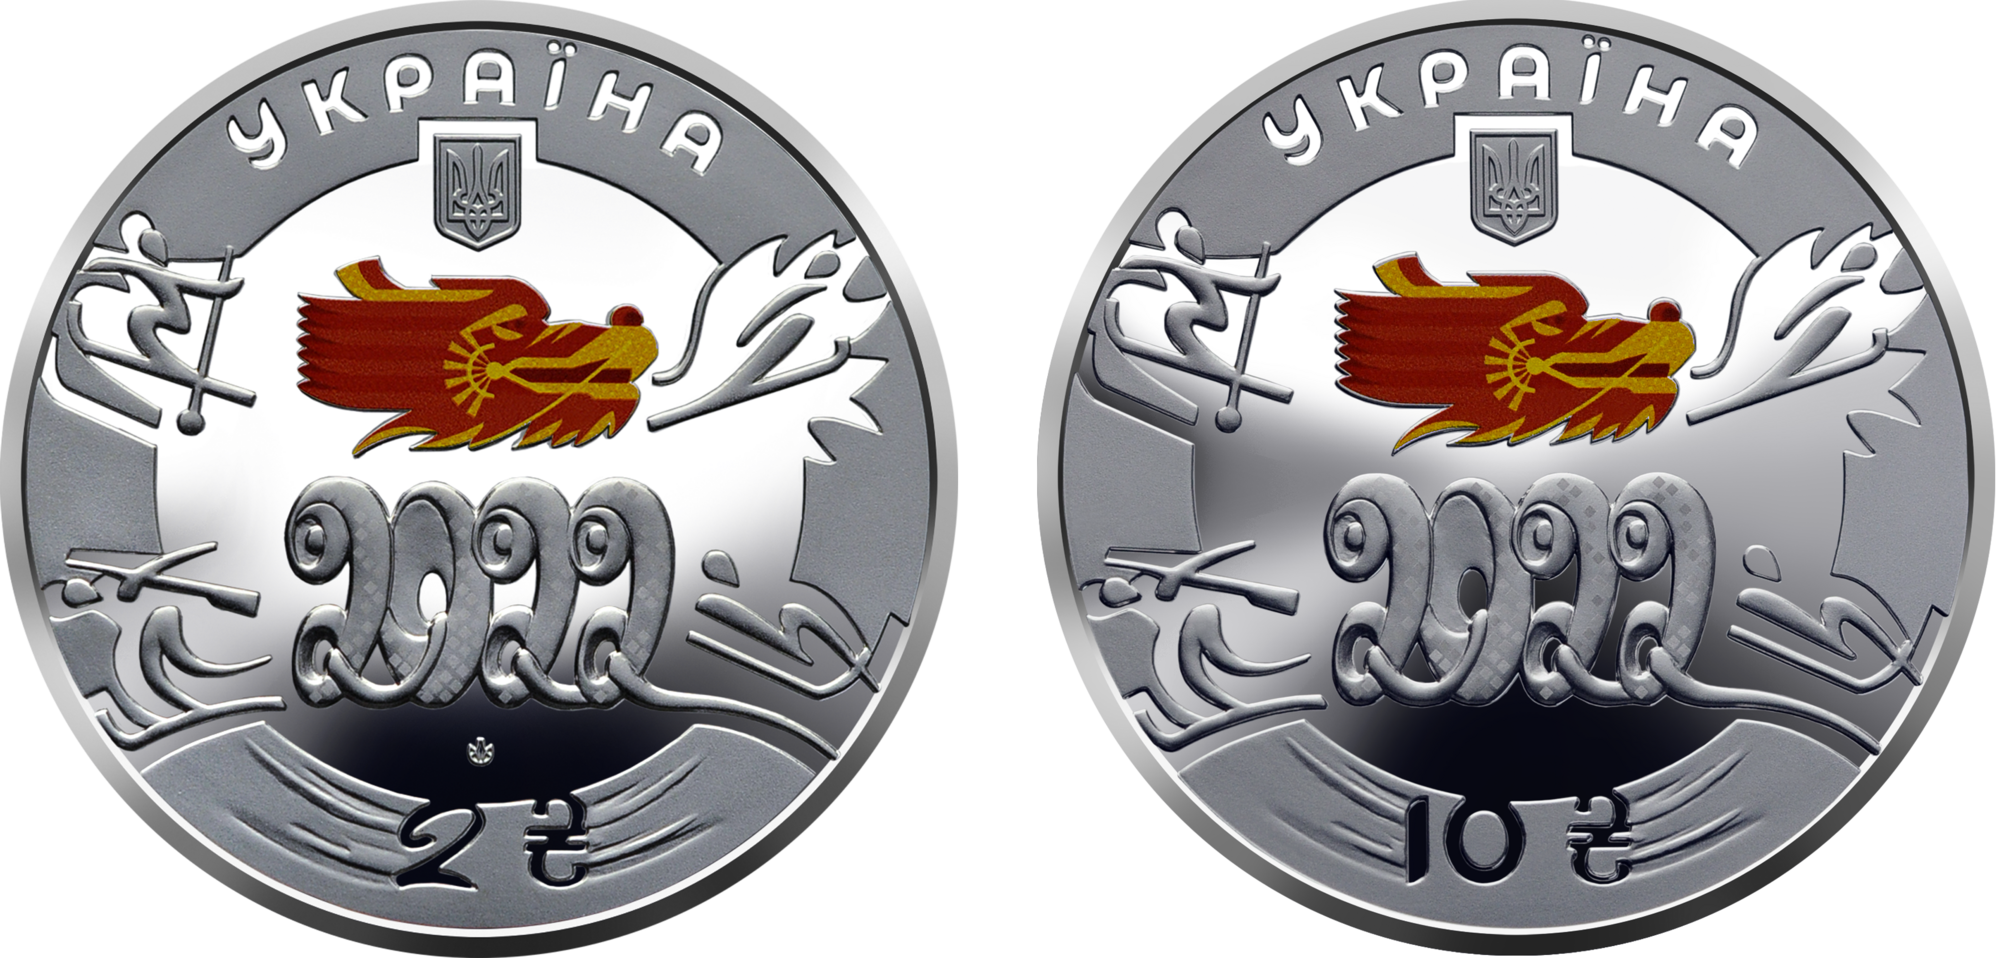 Аверси монет 2 та 10 грн